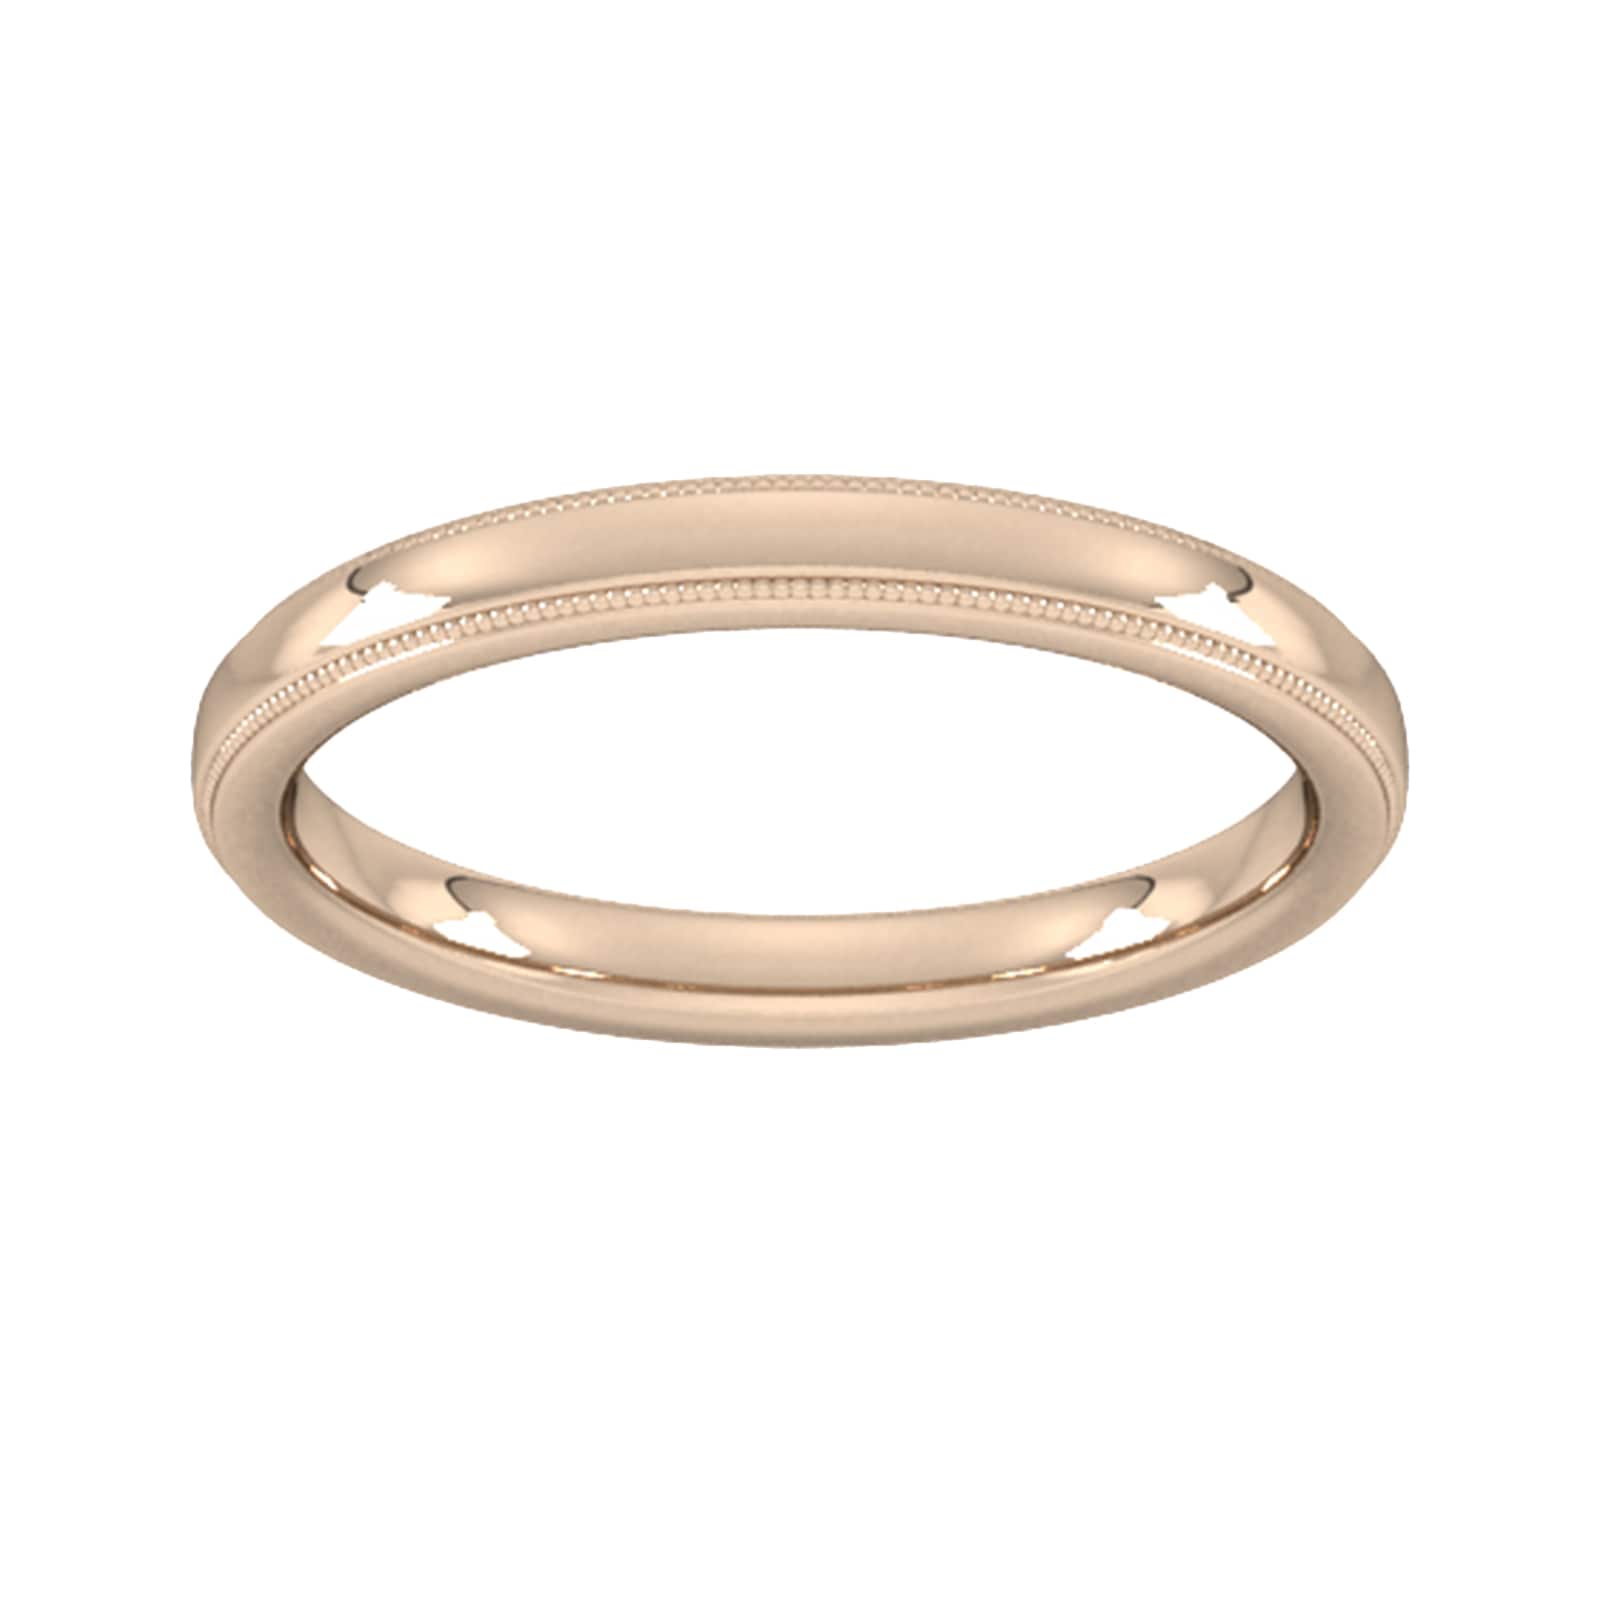 2.5mm Slight Court Heavy Milgrain Edge Wedding Ring In 18 Carat Rose Gold - Ring Size P